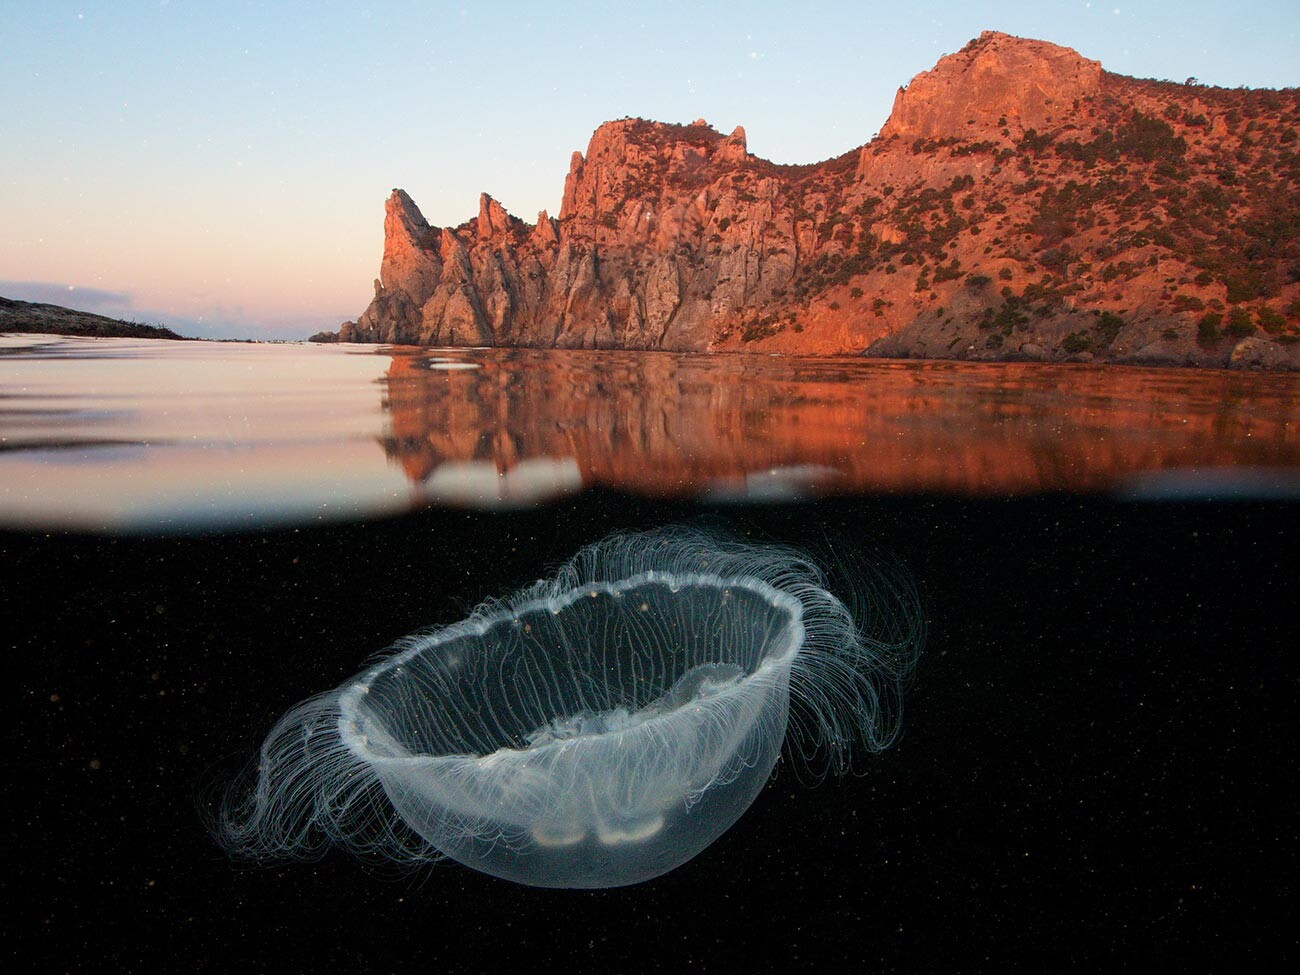 「ミズクラゲ」―エゴル・ニキフォロフ。山々に囲まれたクラゲの写真が、「水中の世界」カテゴリーで受賞